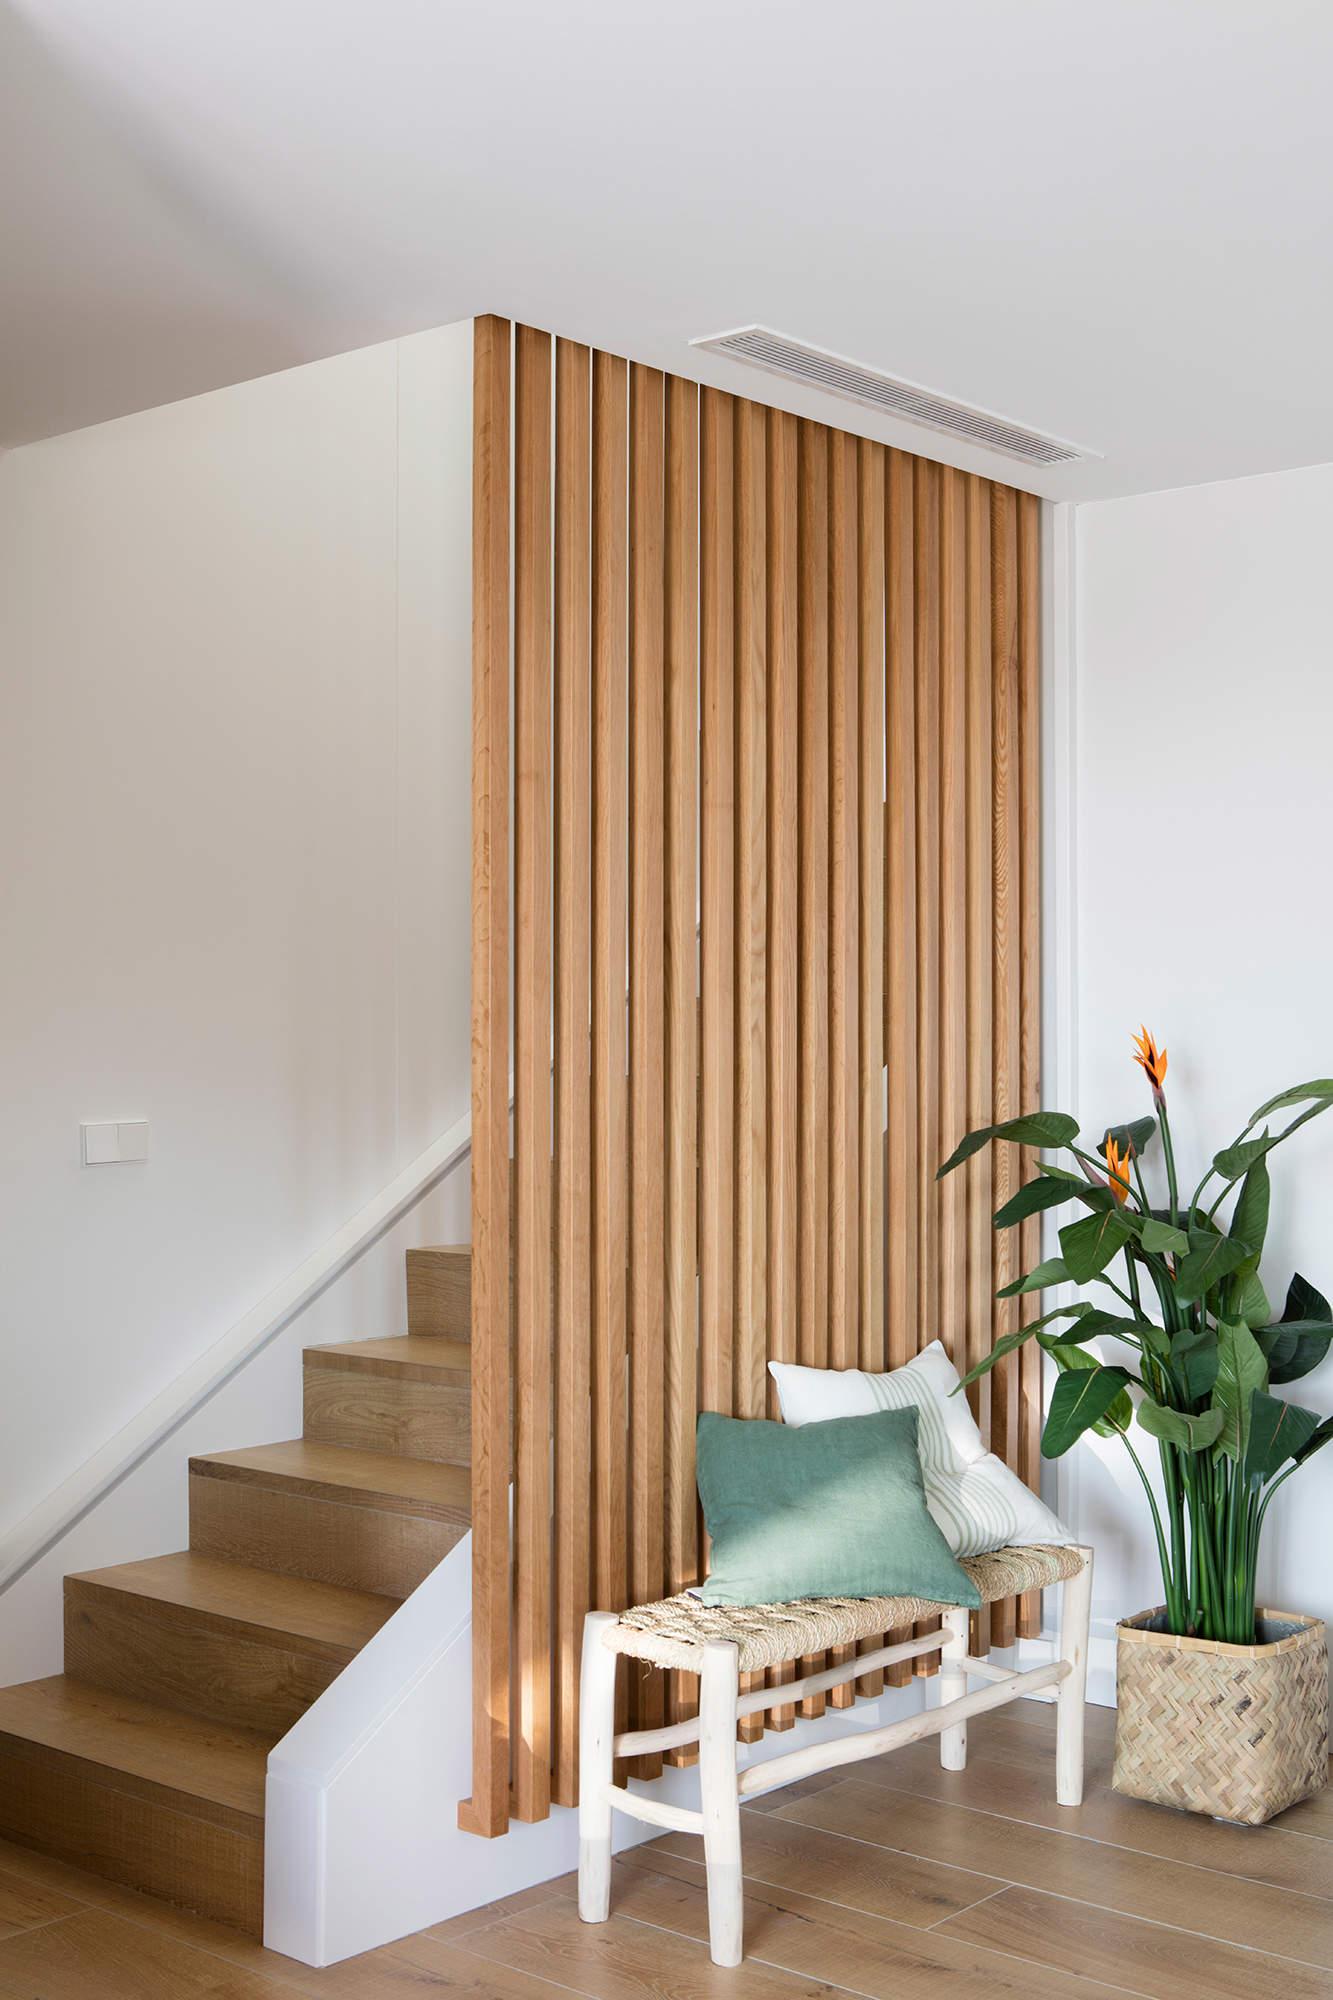 Panelar las paredes de tu hogar con paneles decorativos de madera